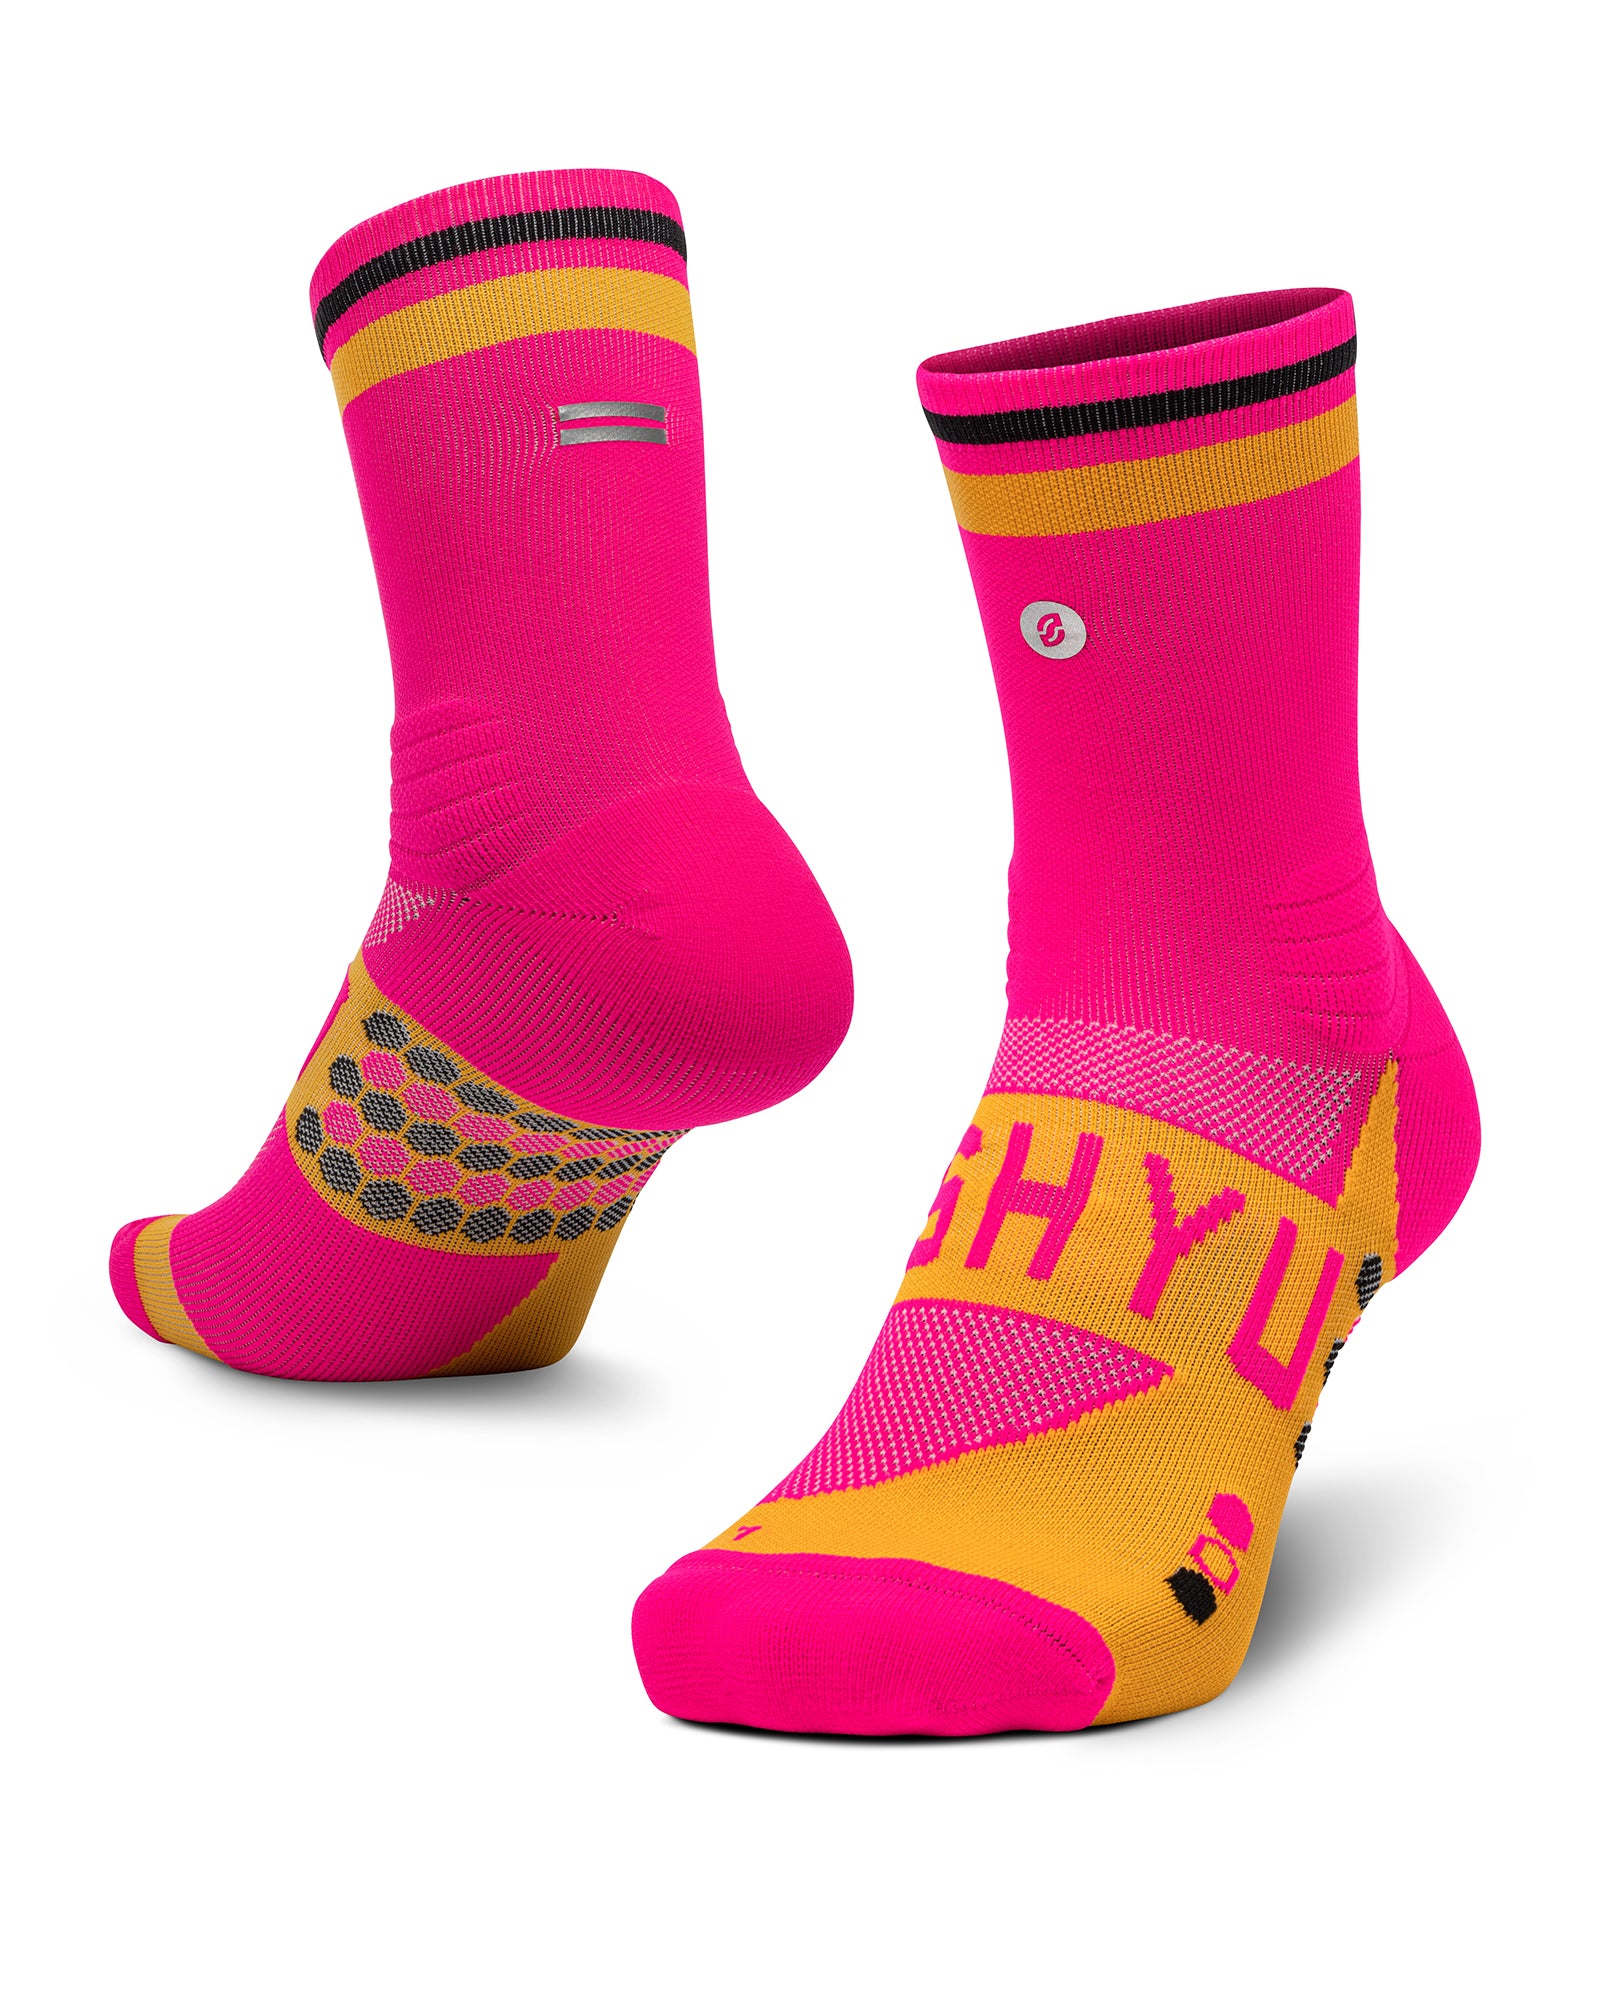 SHYU racing socks - pink | orange | black